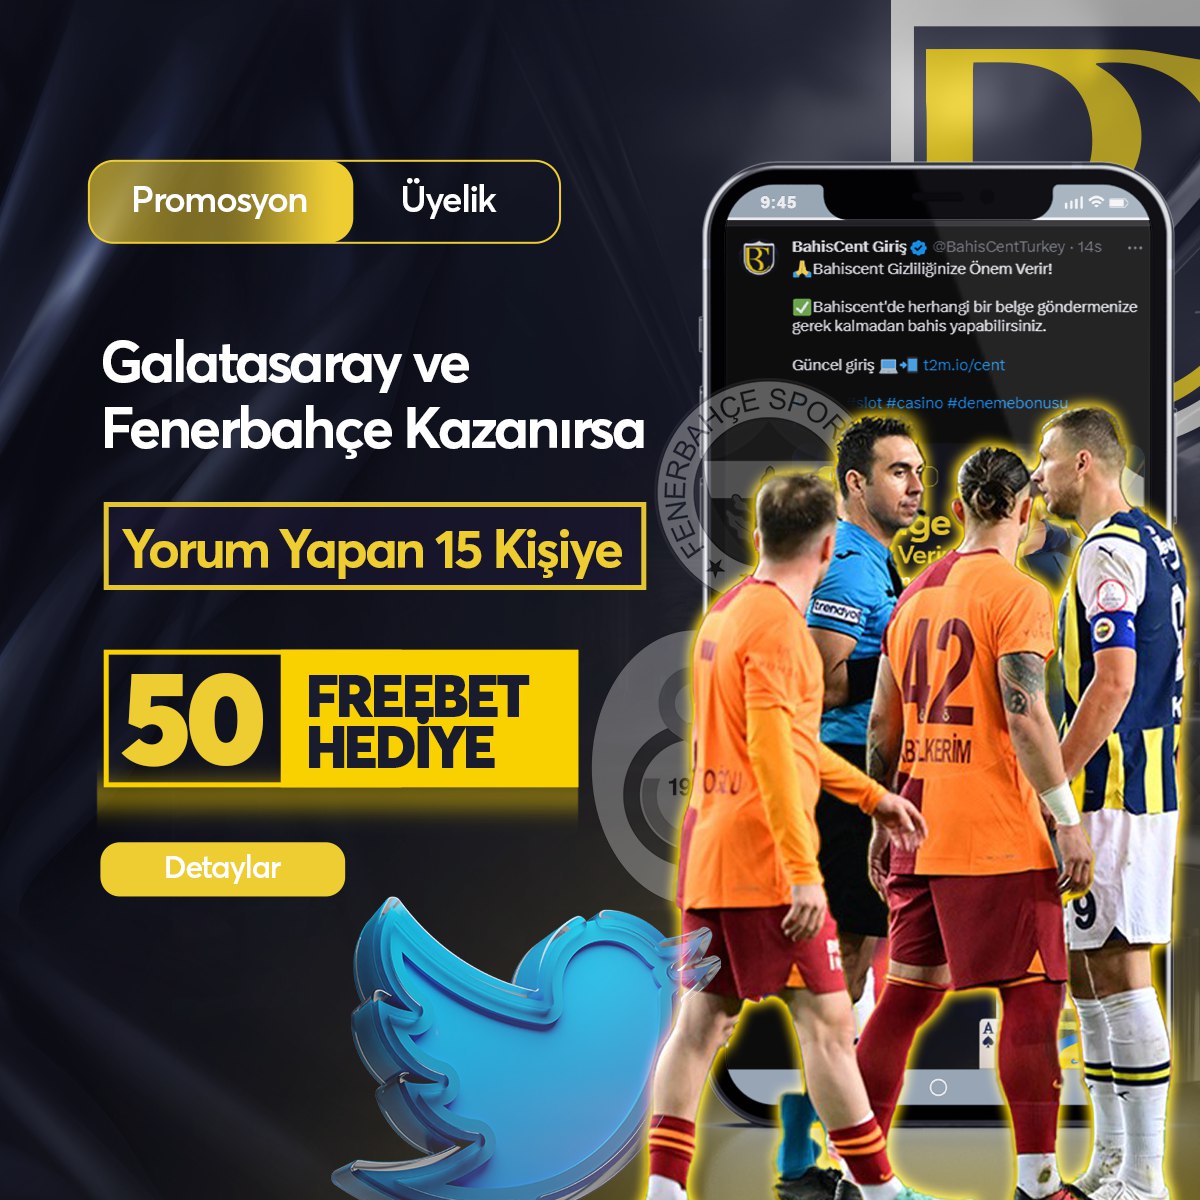 🔥#BAHİSCENT’DE ETKİNLİKLER DURMAK BİLMİYOR!

🎁 Galatasaray ve Fenerbahçe kazanırsa gönderimize yorum atan 15 üyemize 50 Freebet hediye ediyoruz!

💰Hemen sen de yorum at ve kazanma fırsatını kaçırma!

⚠️Yorumunun yanına kullanıcı adını yazmayı unutma.

#Beşiktaş #Galatasaray…